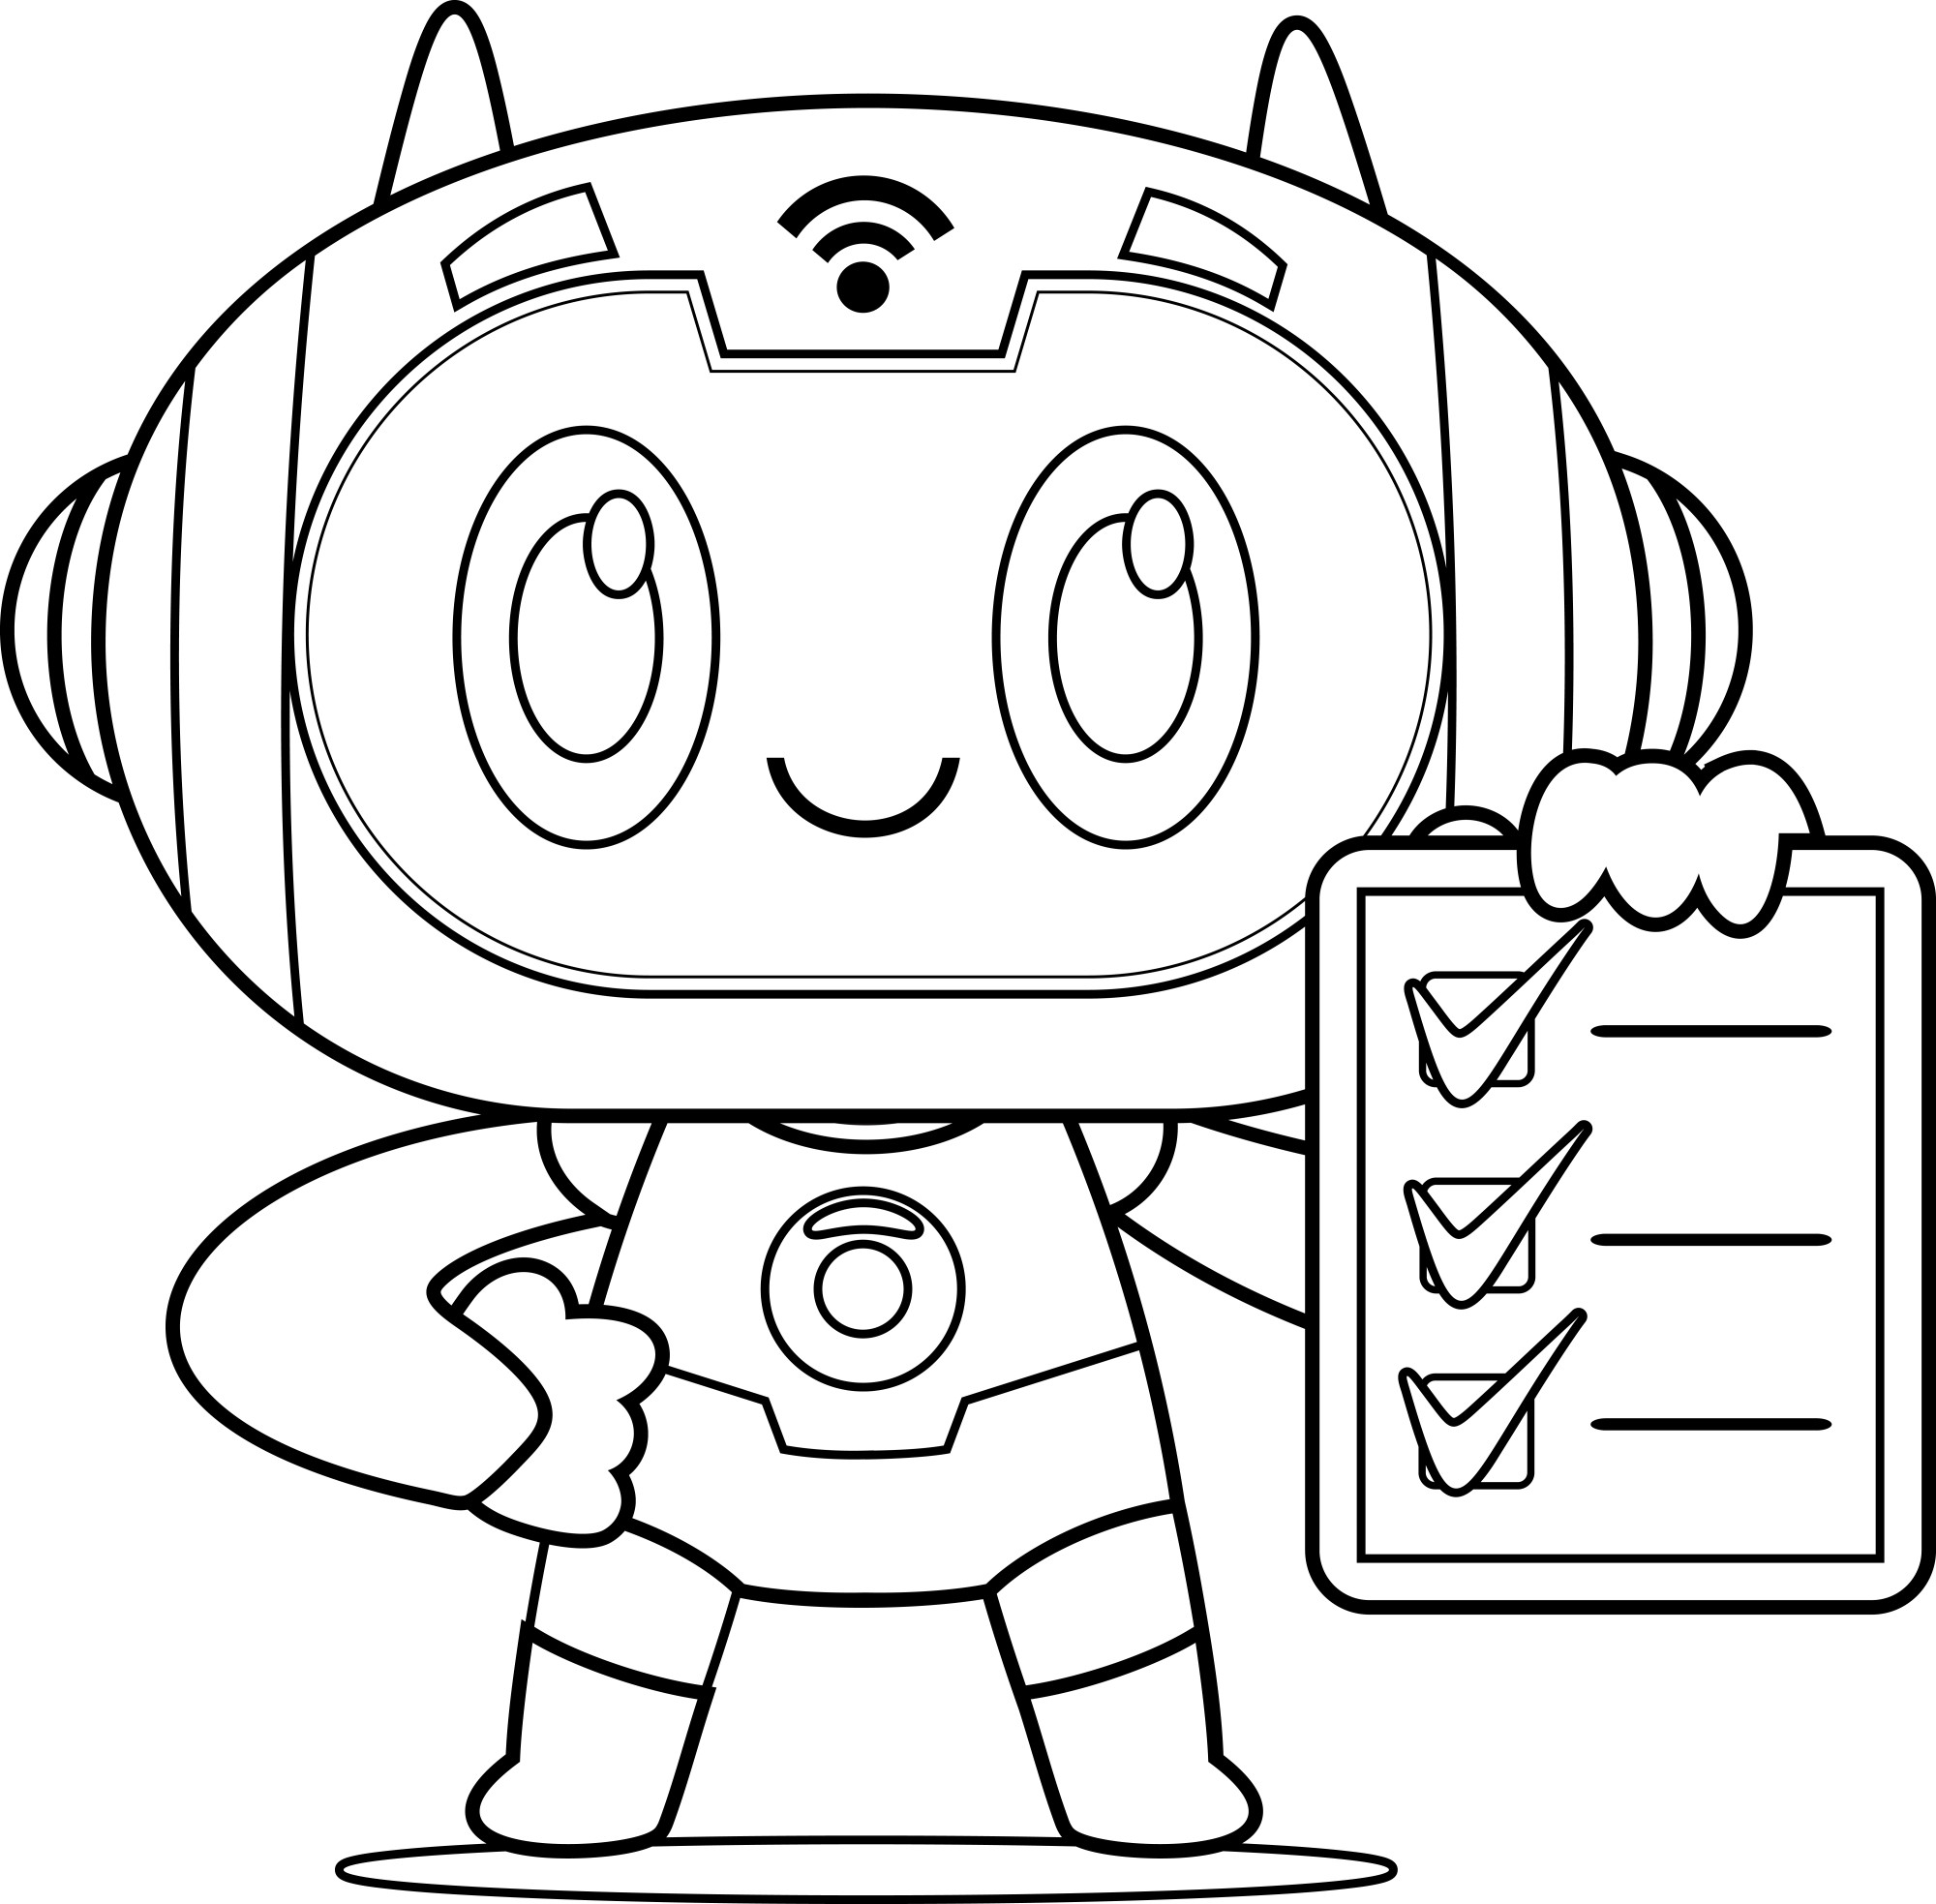 Раскраска для детей: робот со списком дел в руке